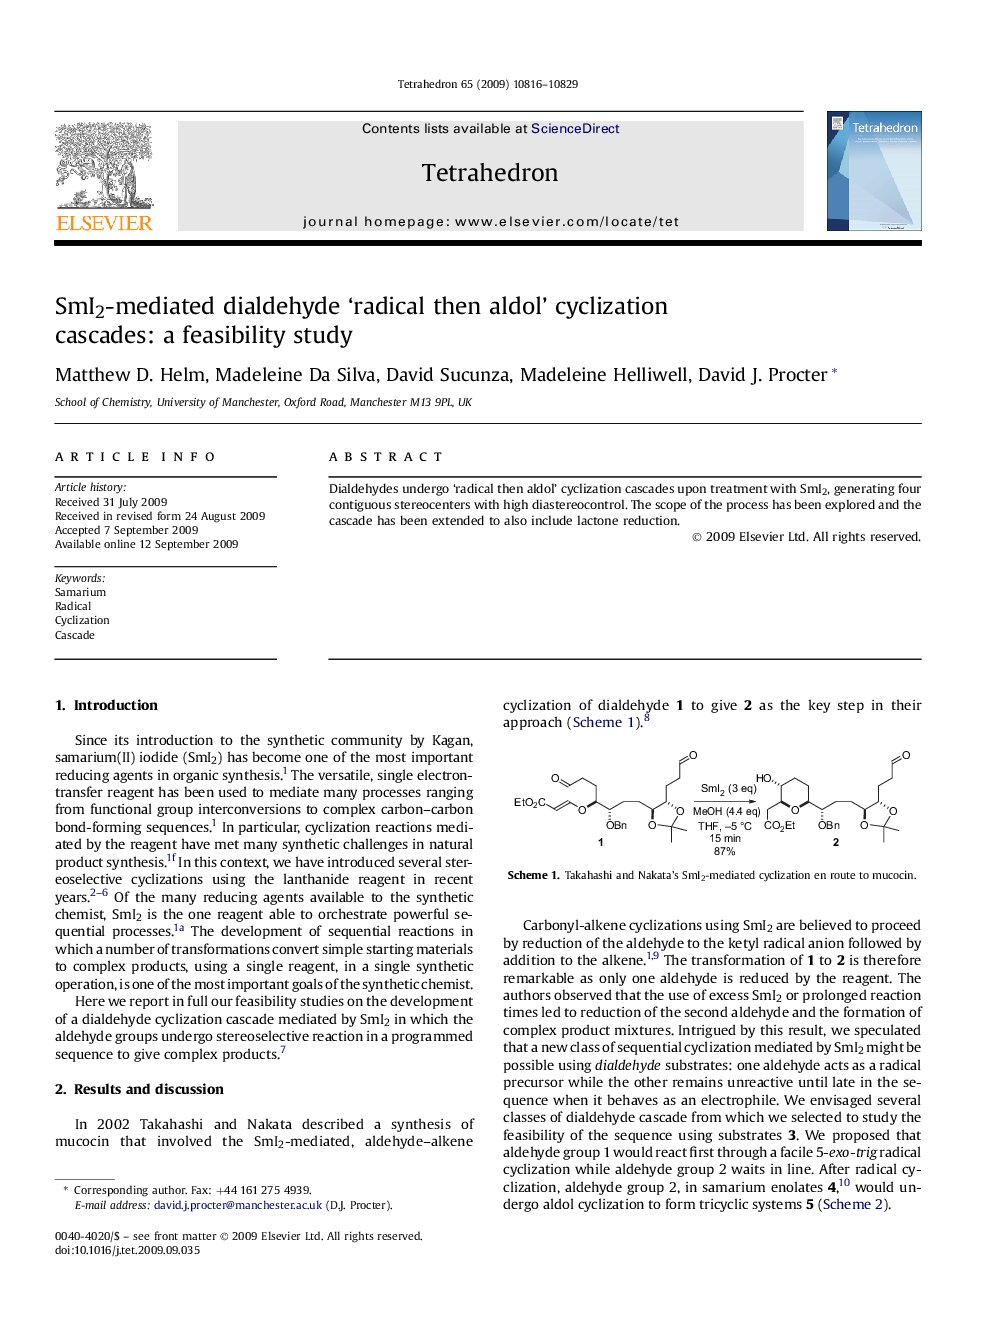 SmI2-mediated dialdehyde 'radical then aldol' cyclization cascades: a feasibility study